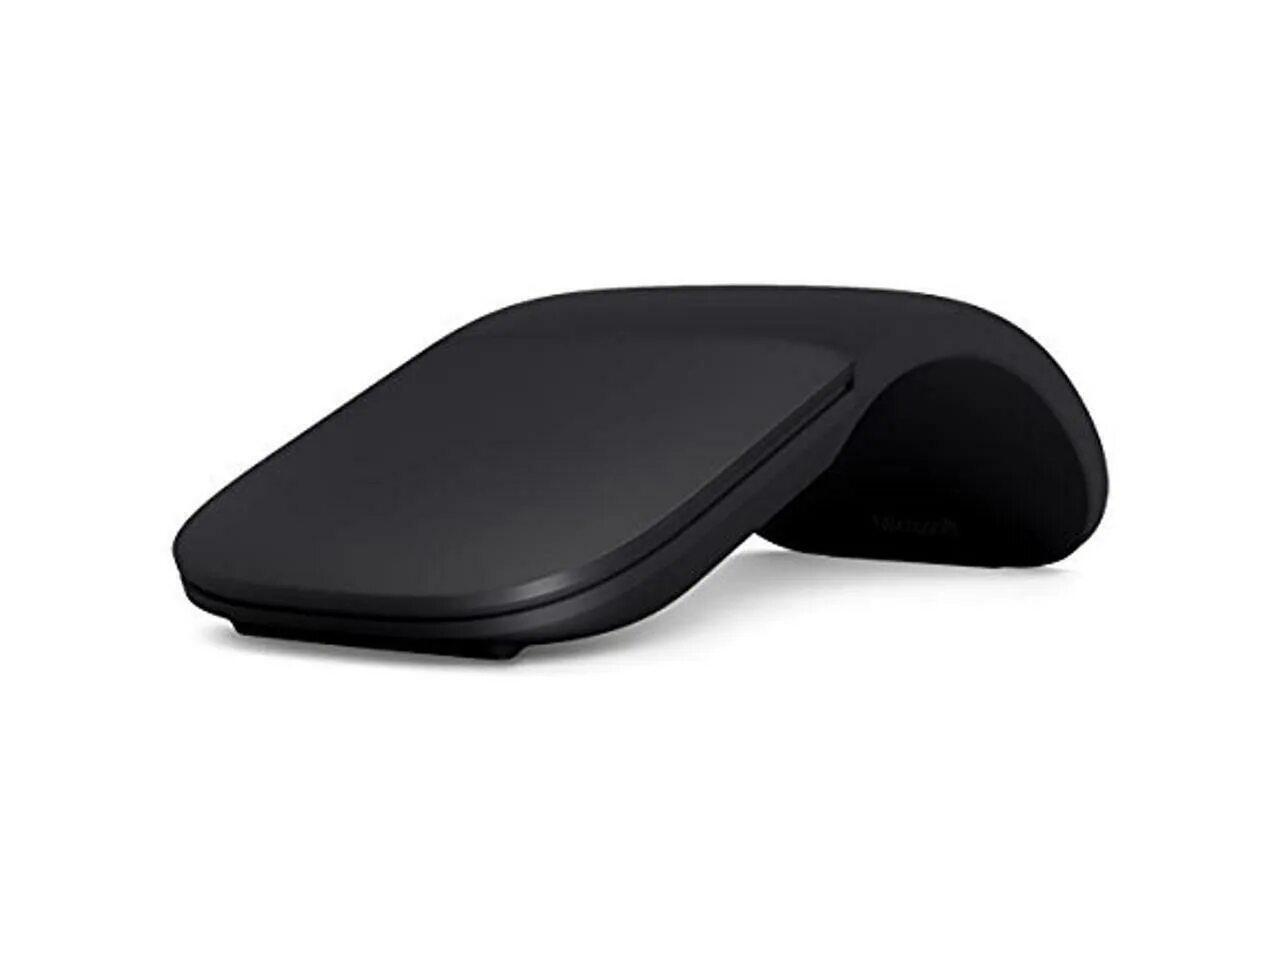 Мышь arc. Мышь Microsoft Arc Mouse Black Bluetooth ELG-00013. Мышь Microsoft Arc Touch Mouse. Мышь компьютерная Microsoft Arc Black черная (9elg-00013). Мышка Microsoft Arc Touch Bluetooth.